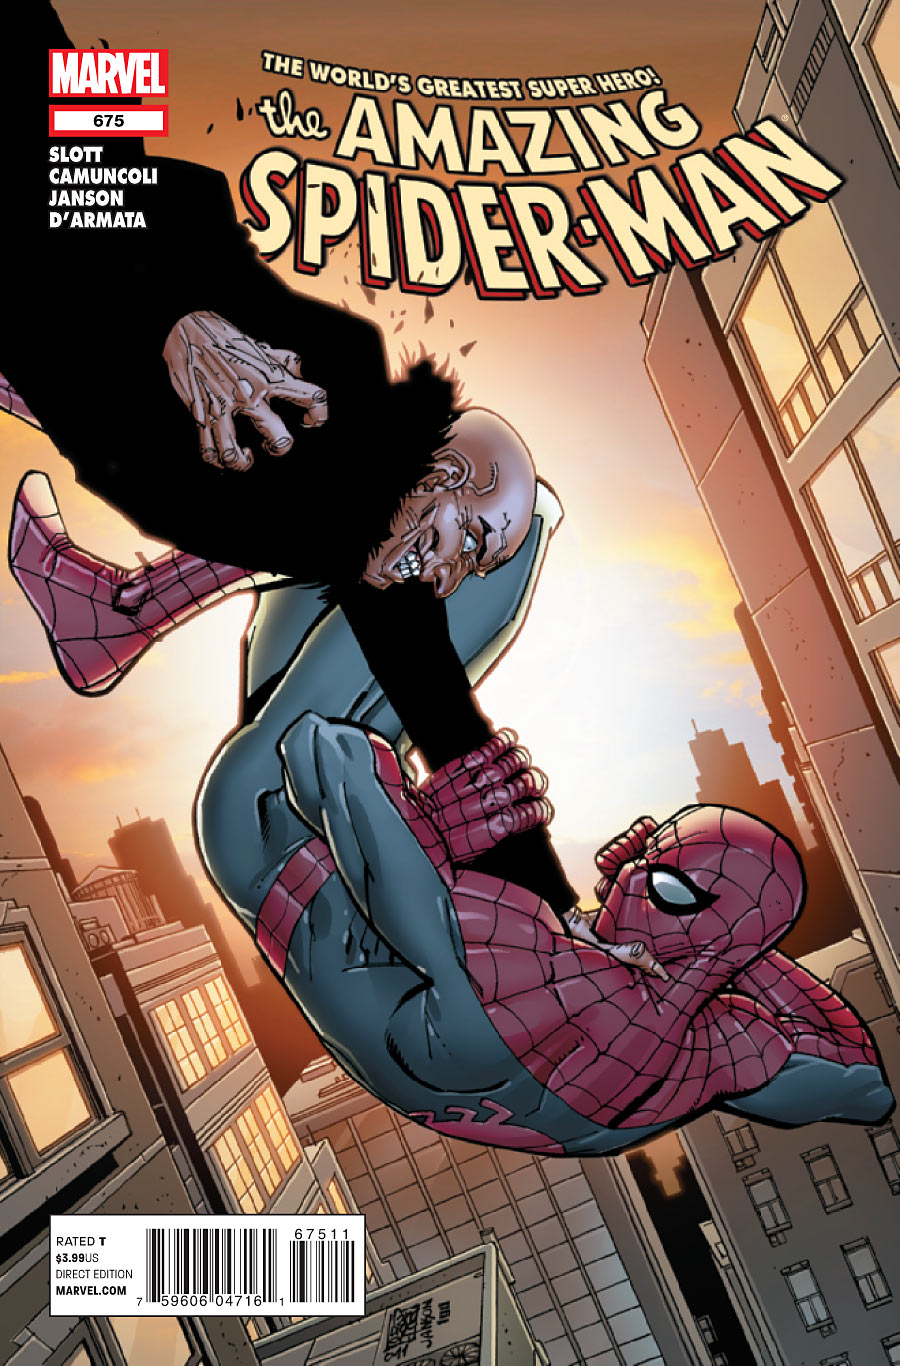 Amazing Spider-Man Vol. 1 #675